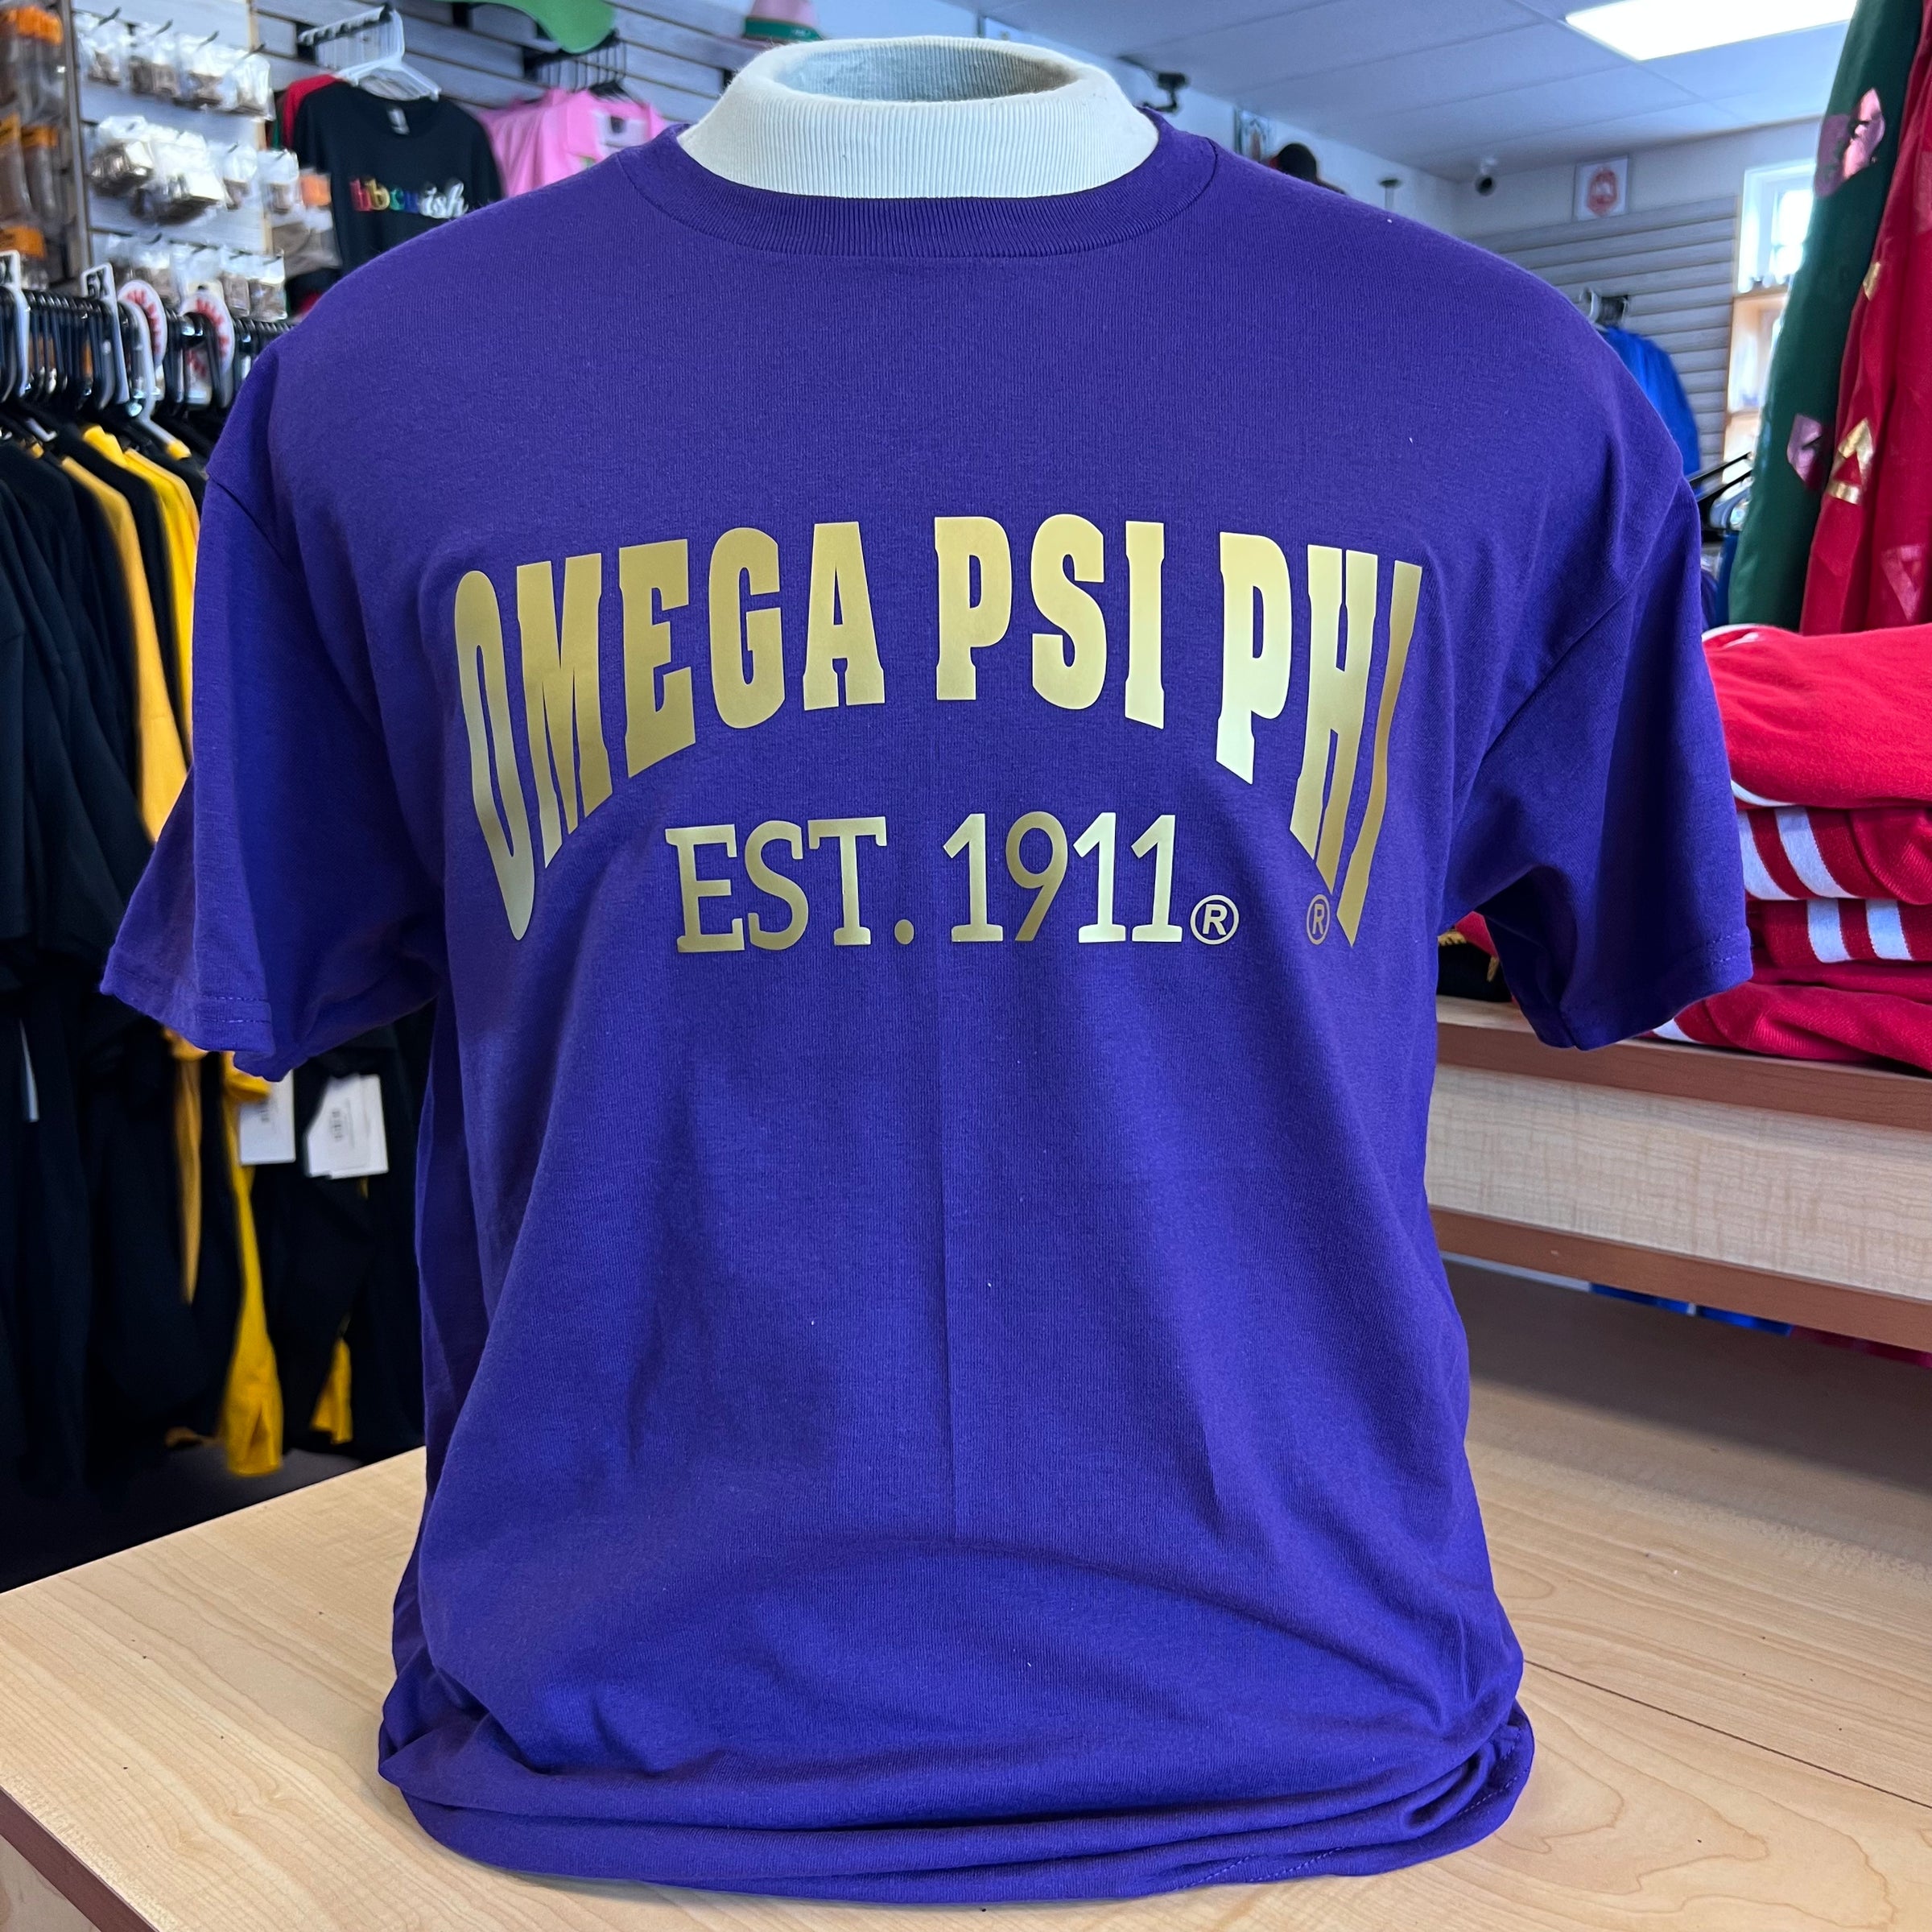 Omega Est T-shirt Purple